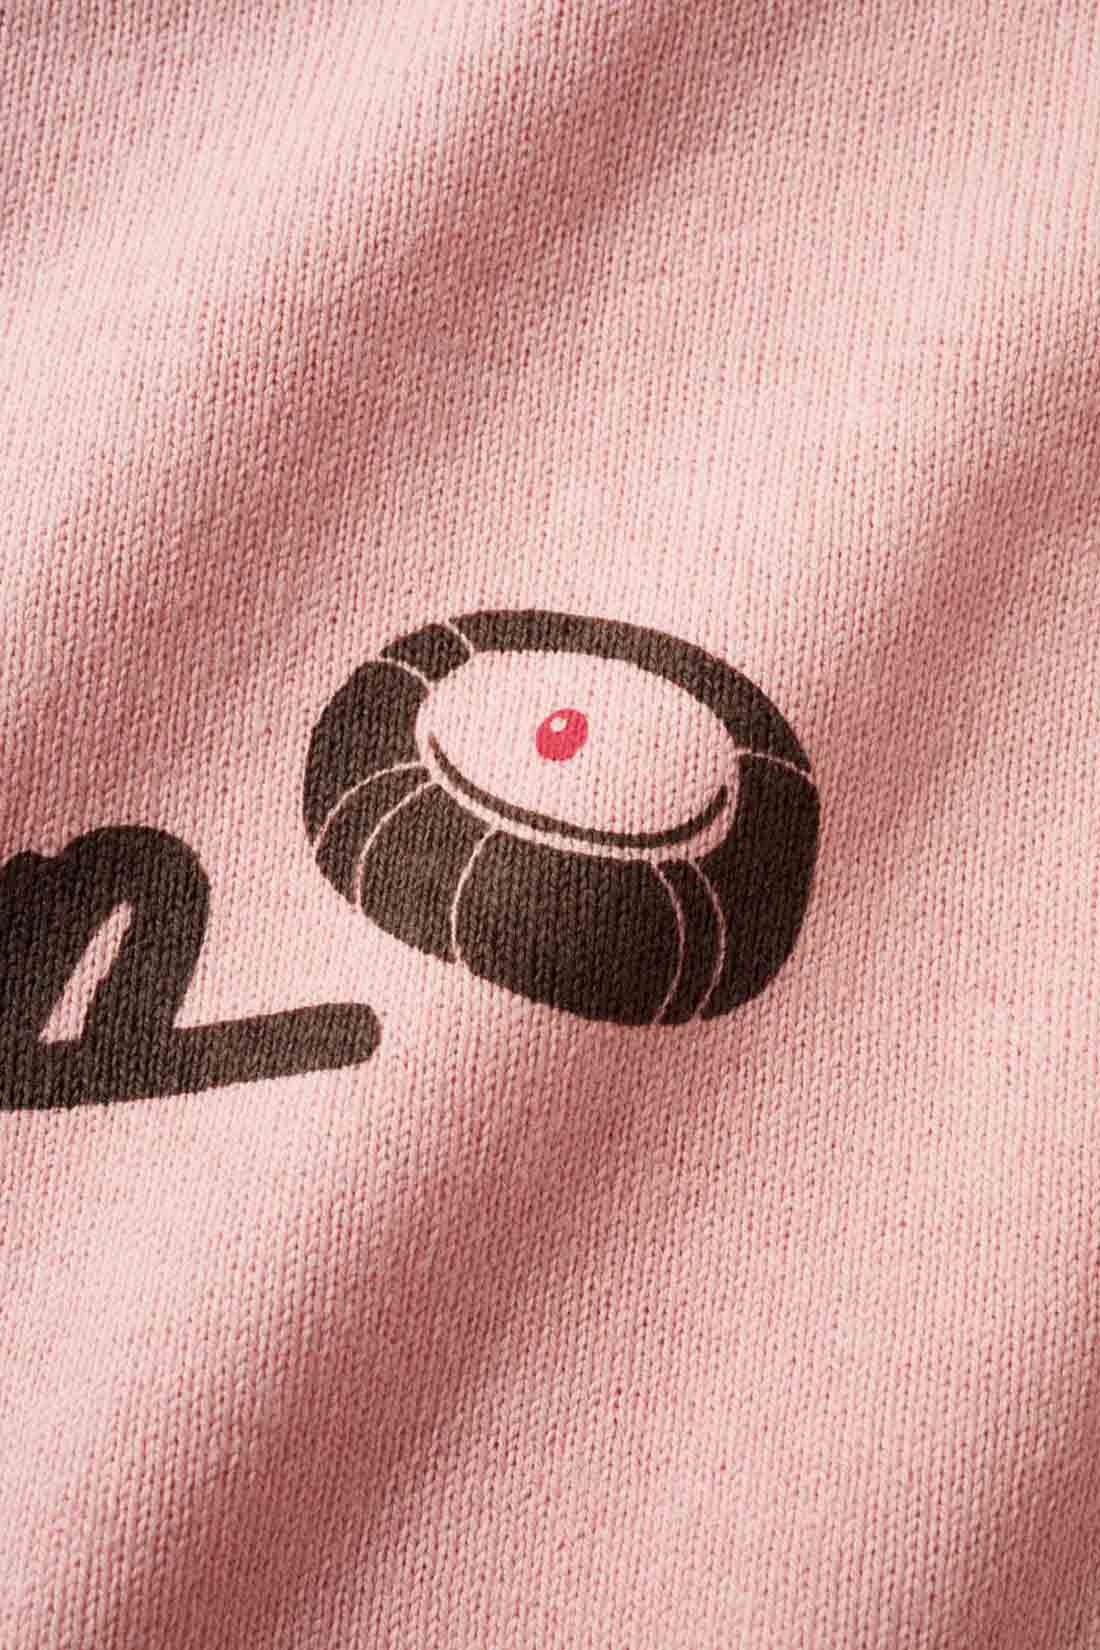 Live in  comfort|Live love cottonプロジェクト リブ イン コンフォート神戸のベーカリーハラダのパンさんとつくったオーガニックコットンのレトロかわいいTシャツ〈ジェイブルー〉|バックプリントには定番商品 「シャーベットクリーム」 のイラストも。※お届けするカラーとは異なります。